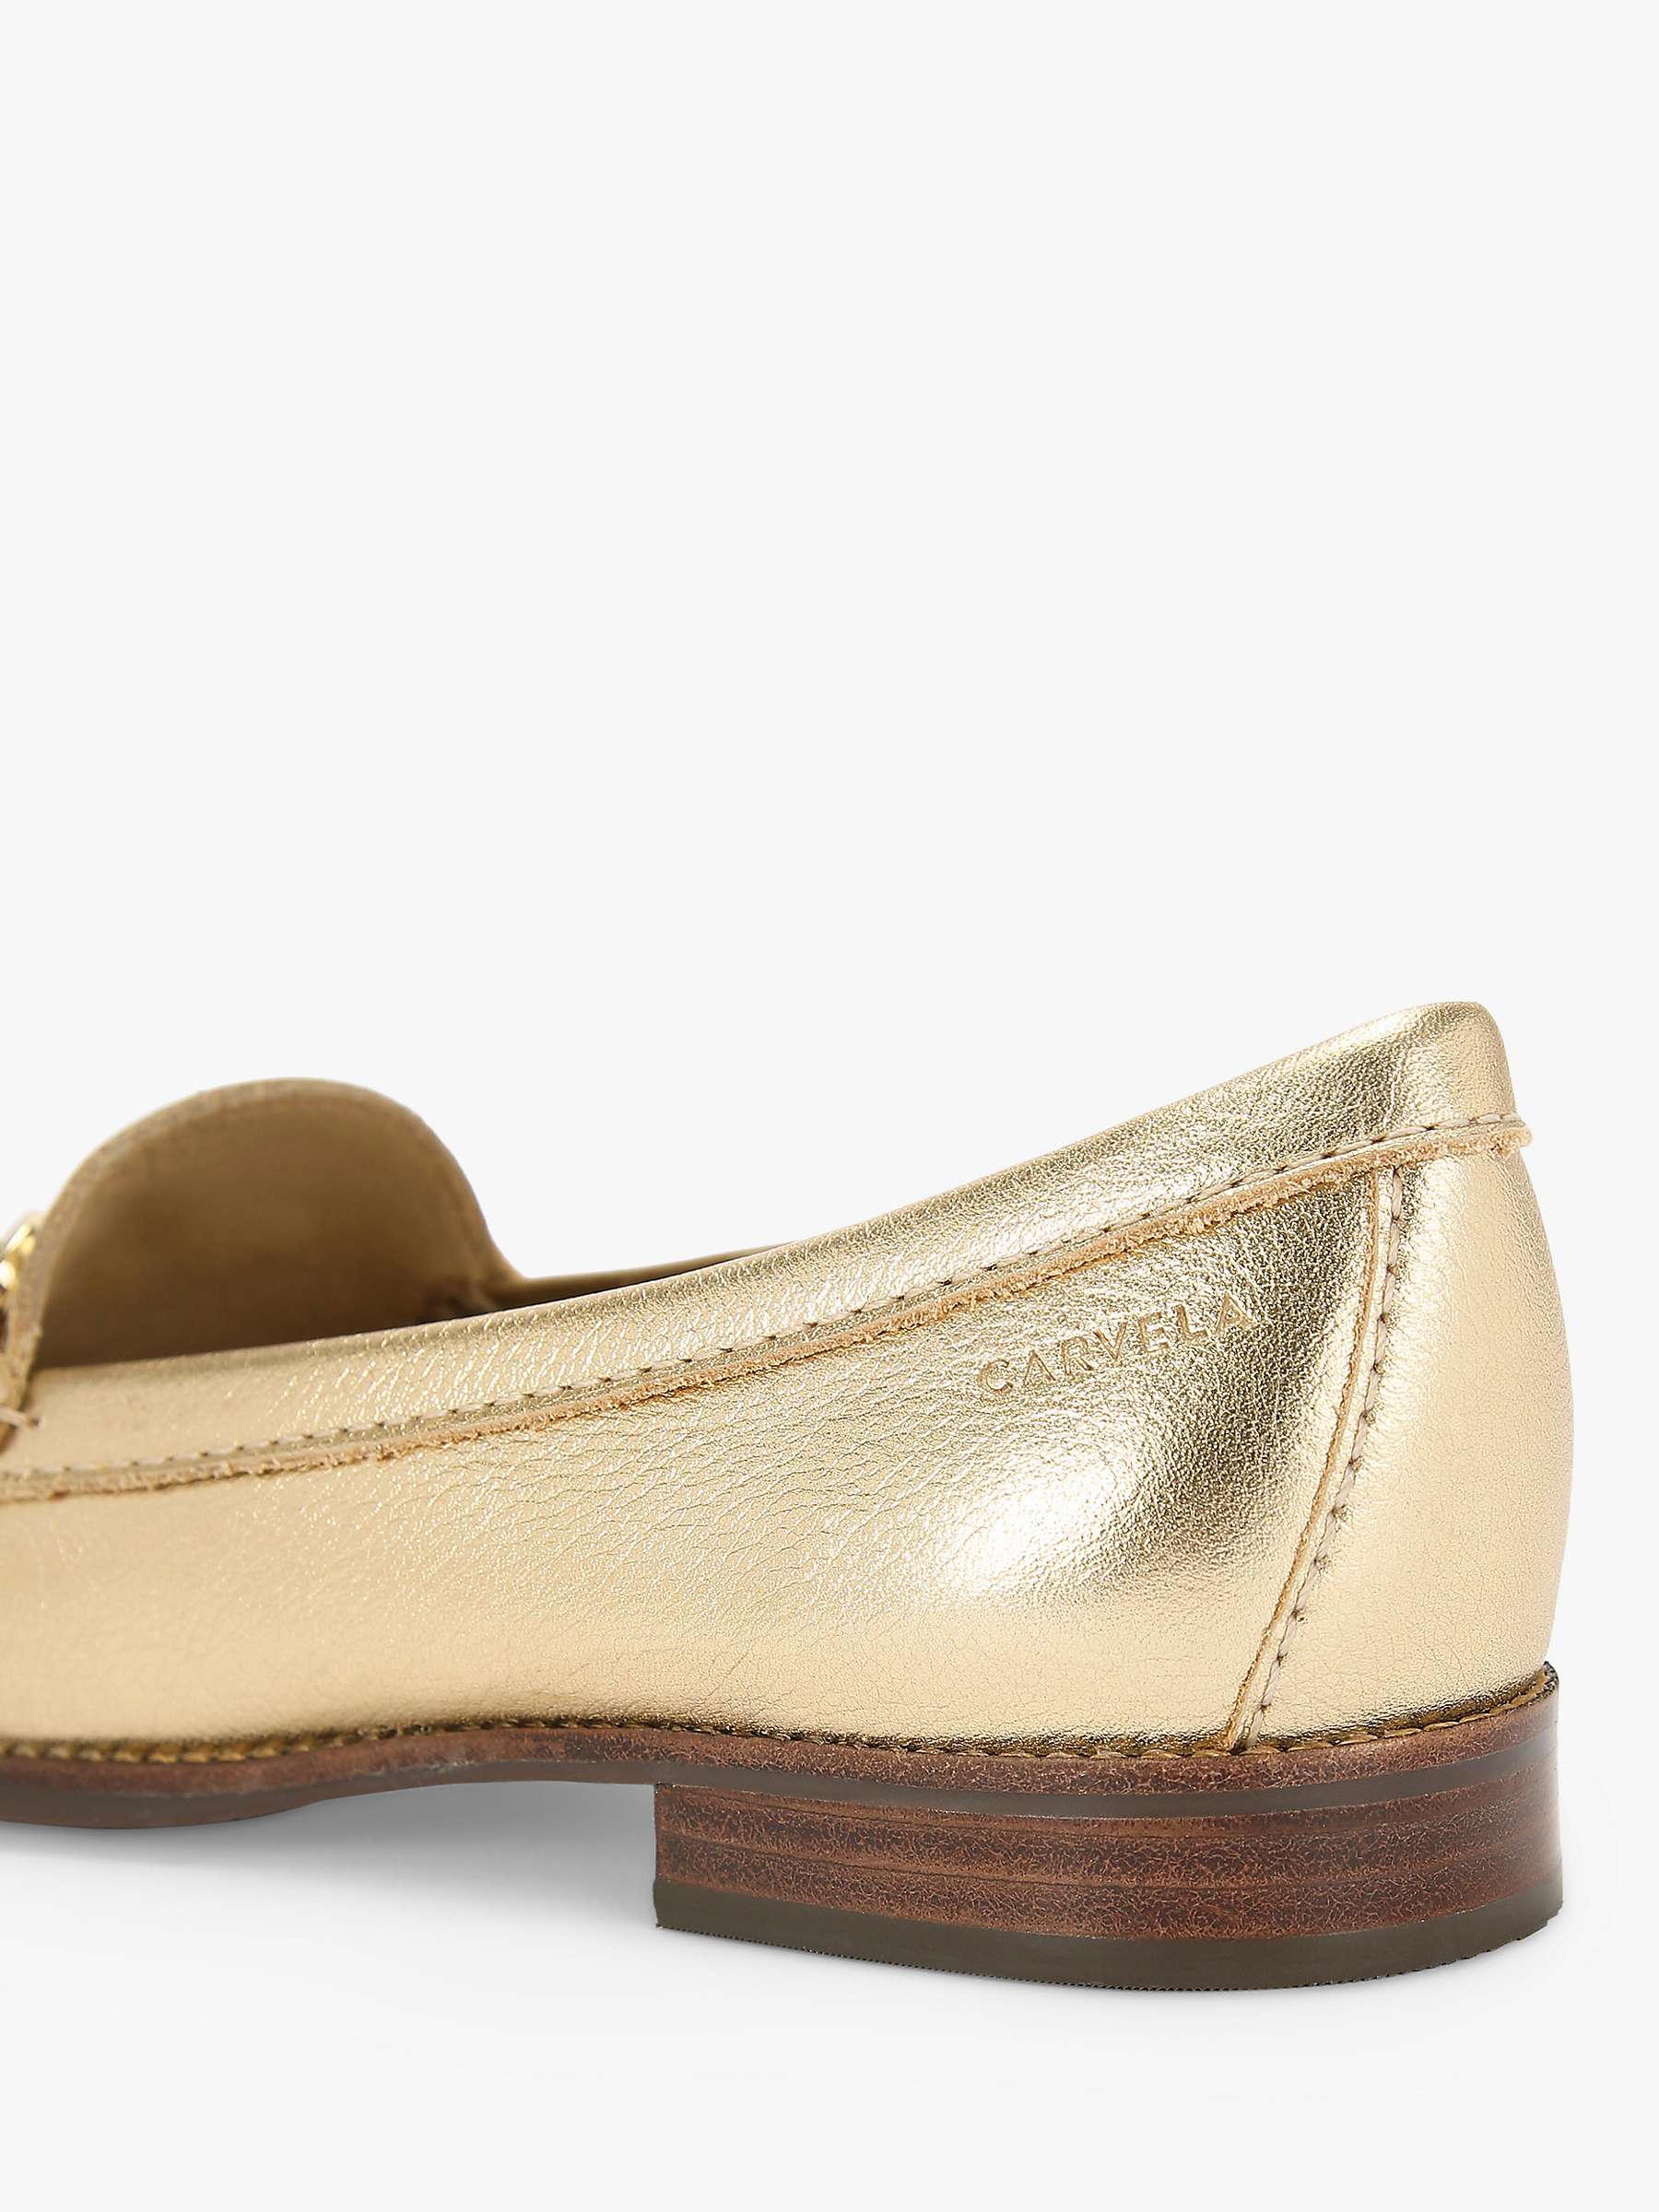 Buy Carvela Comfort Click Loafers Online at johnlewis.com